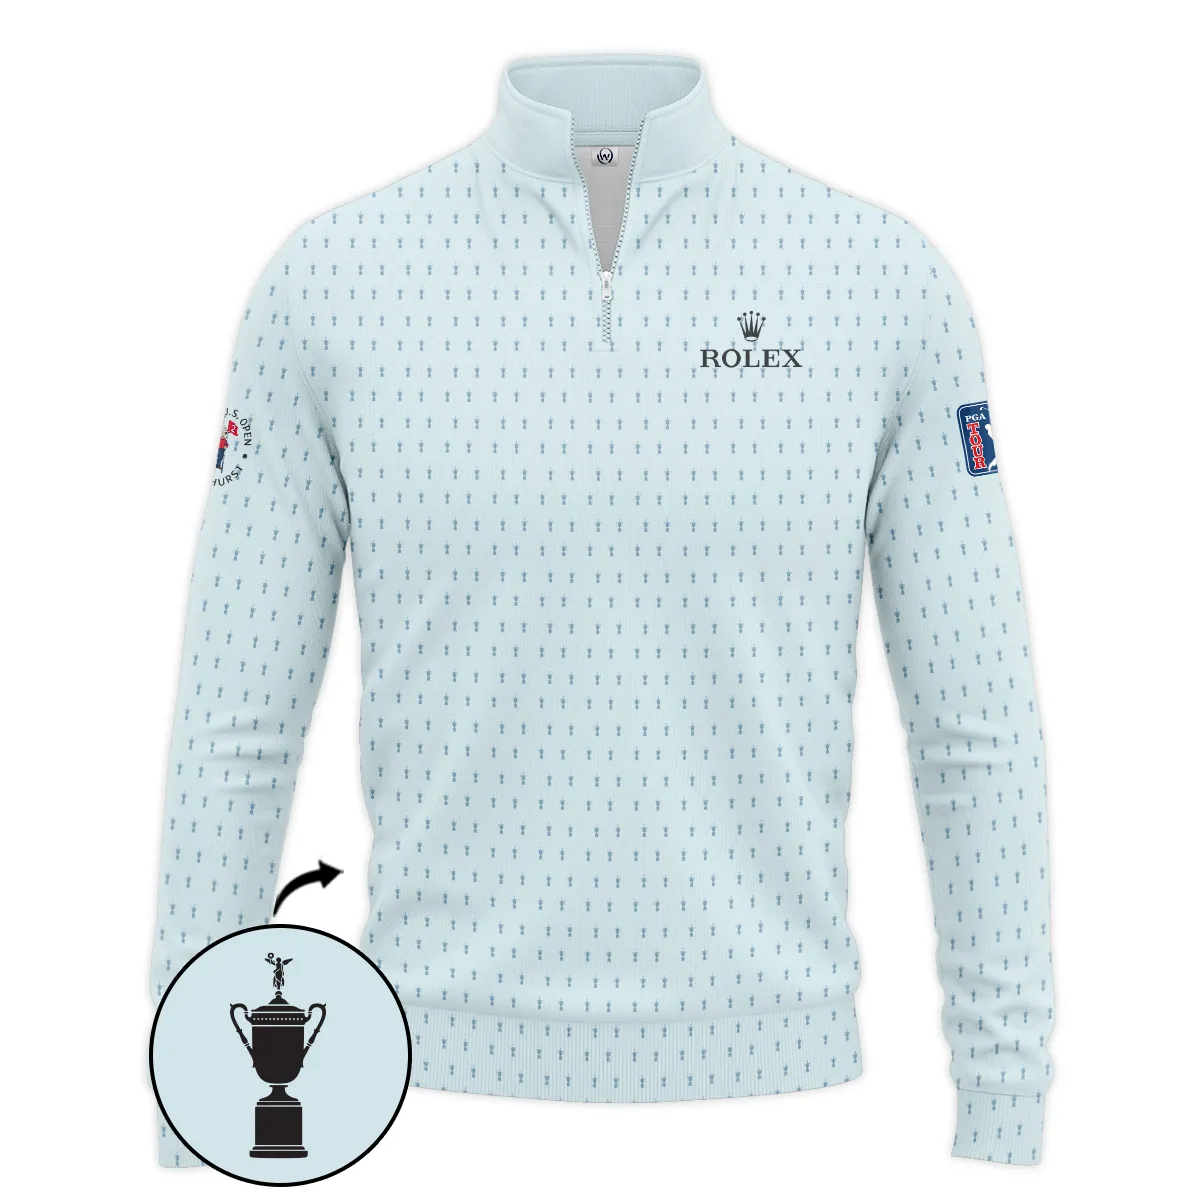 Golf Pattern Cup Light Blue Mix Green 124th U.S. Open Pinehurst Pinehurst Rolex Zipper Polo Shirt Style Classic